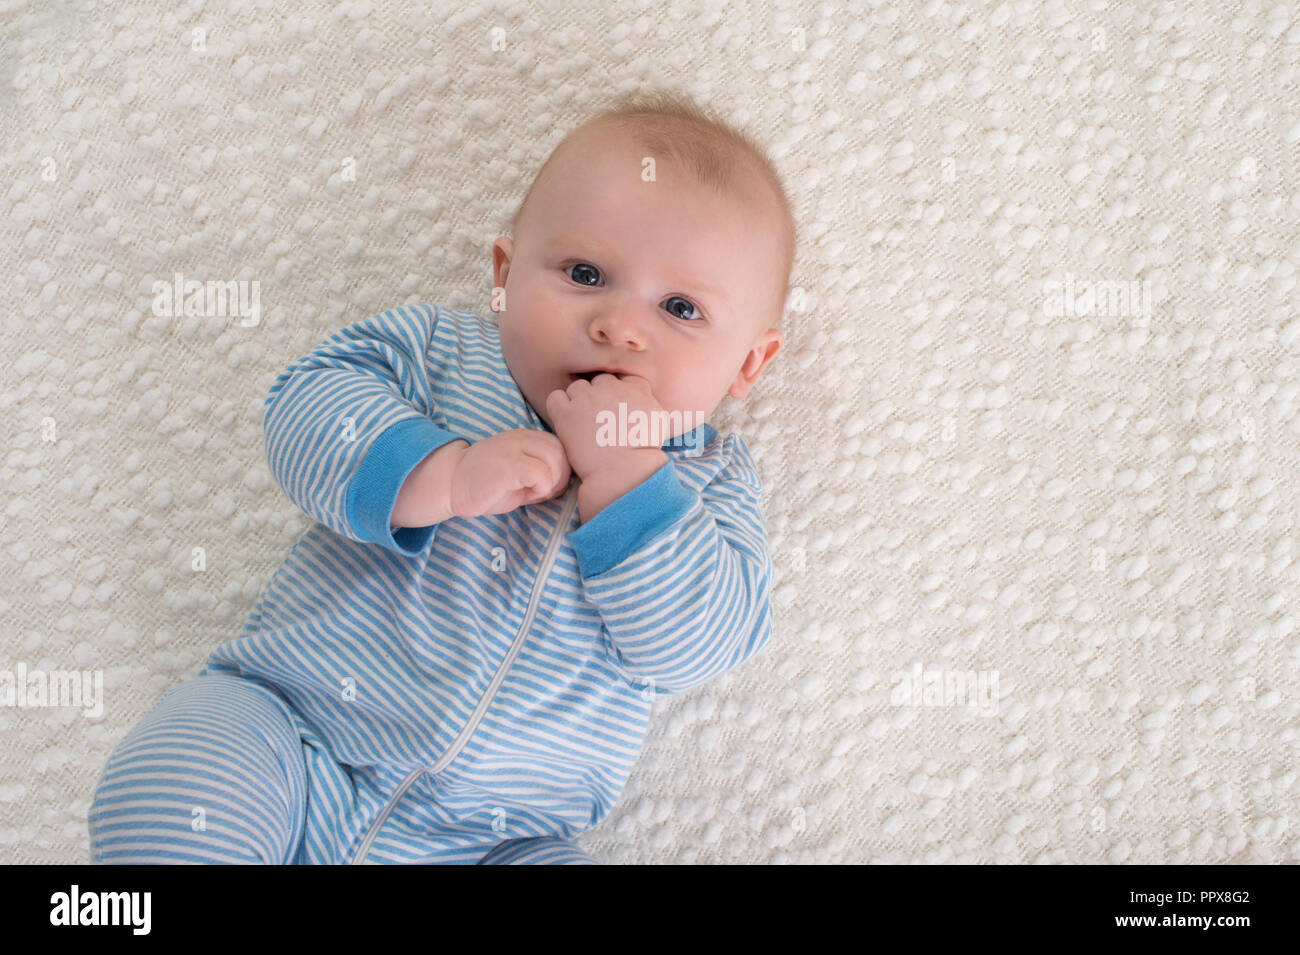 Un bebé de 2 meses niño acostado sobre la espalda en una sábana blanca. Él  está usando pijama de rayas azul y blanco y tiene su mano en su boca y está